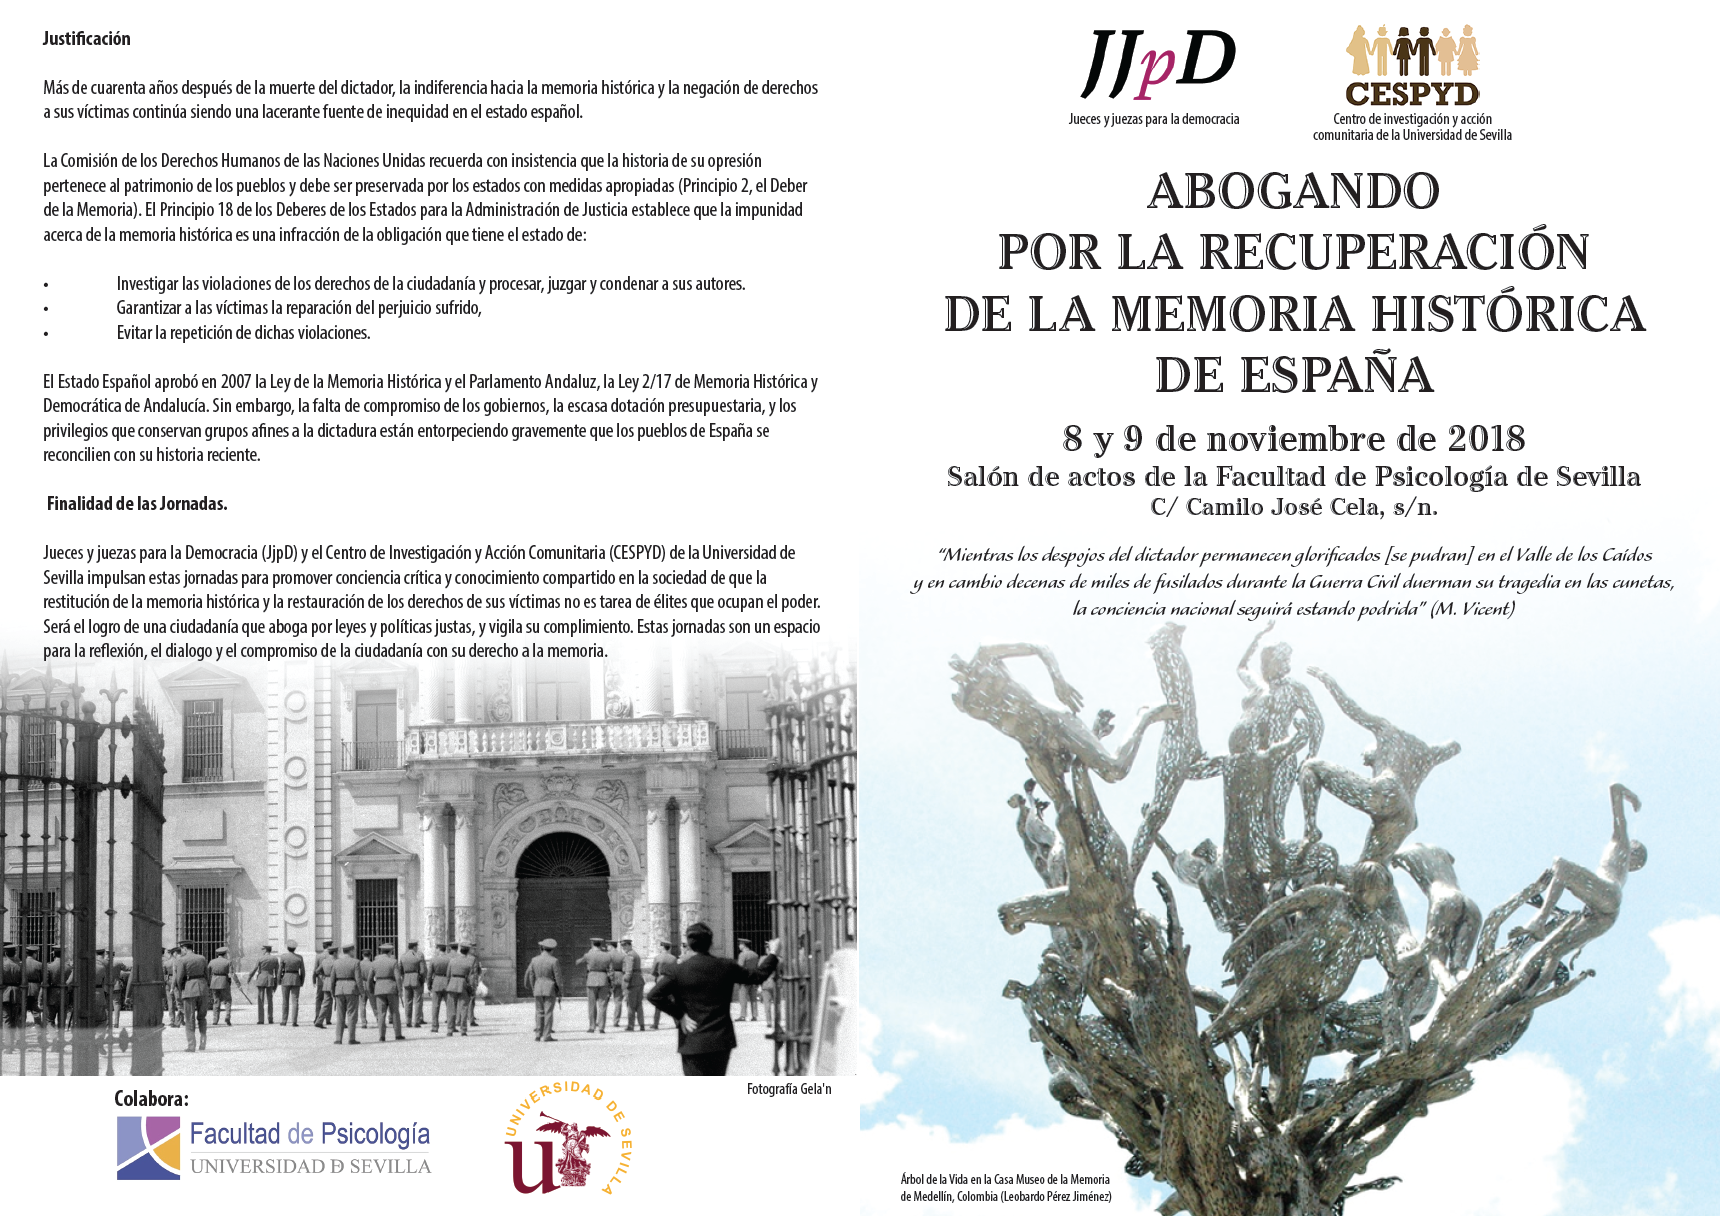 Abogando por la recuperación de la Memoria Histórica de España